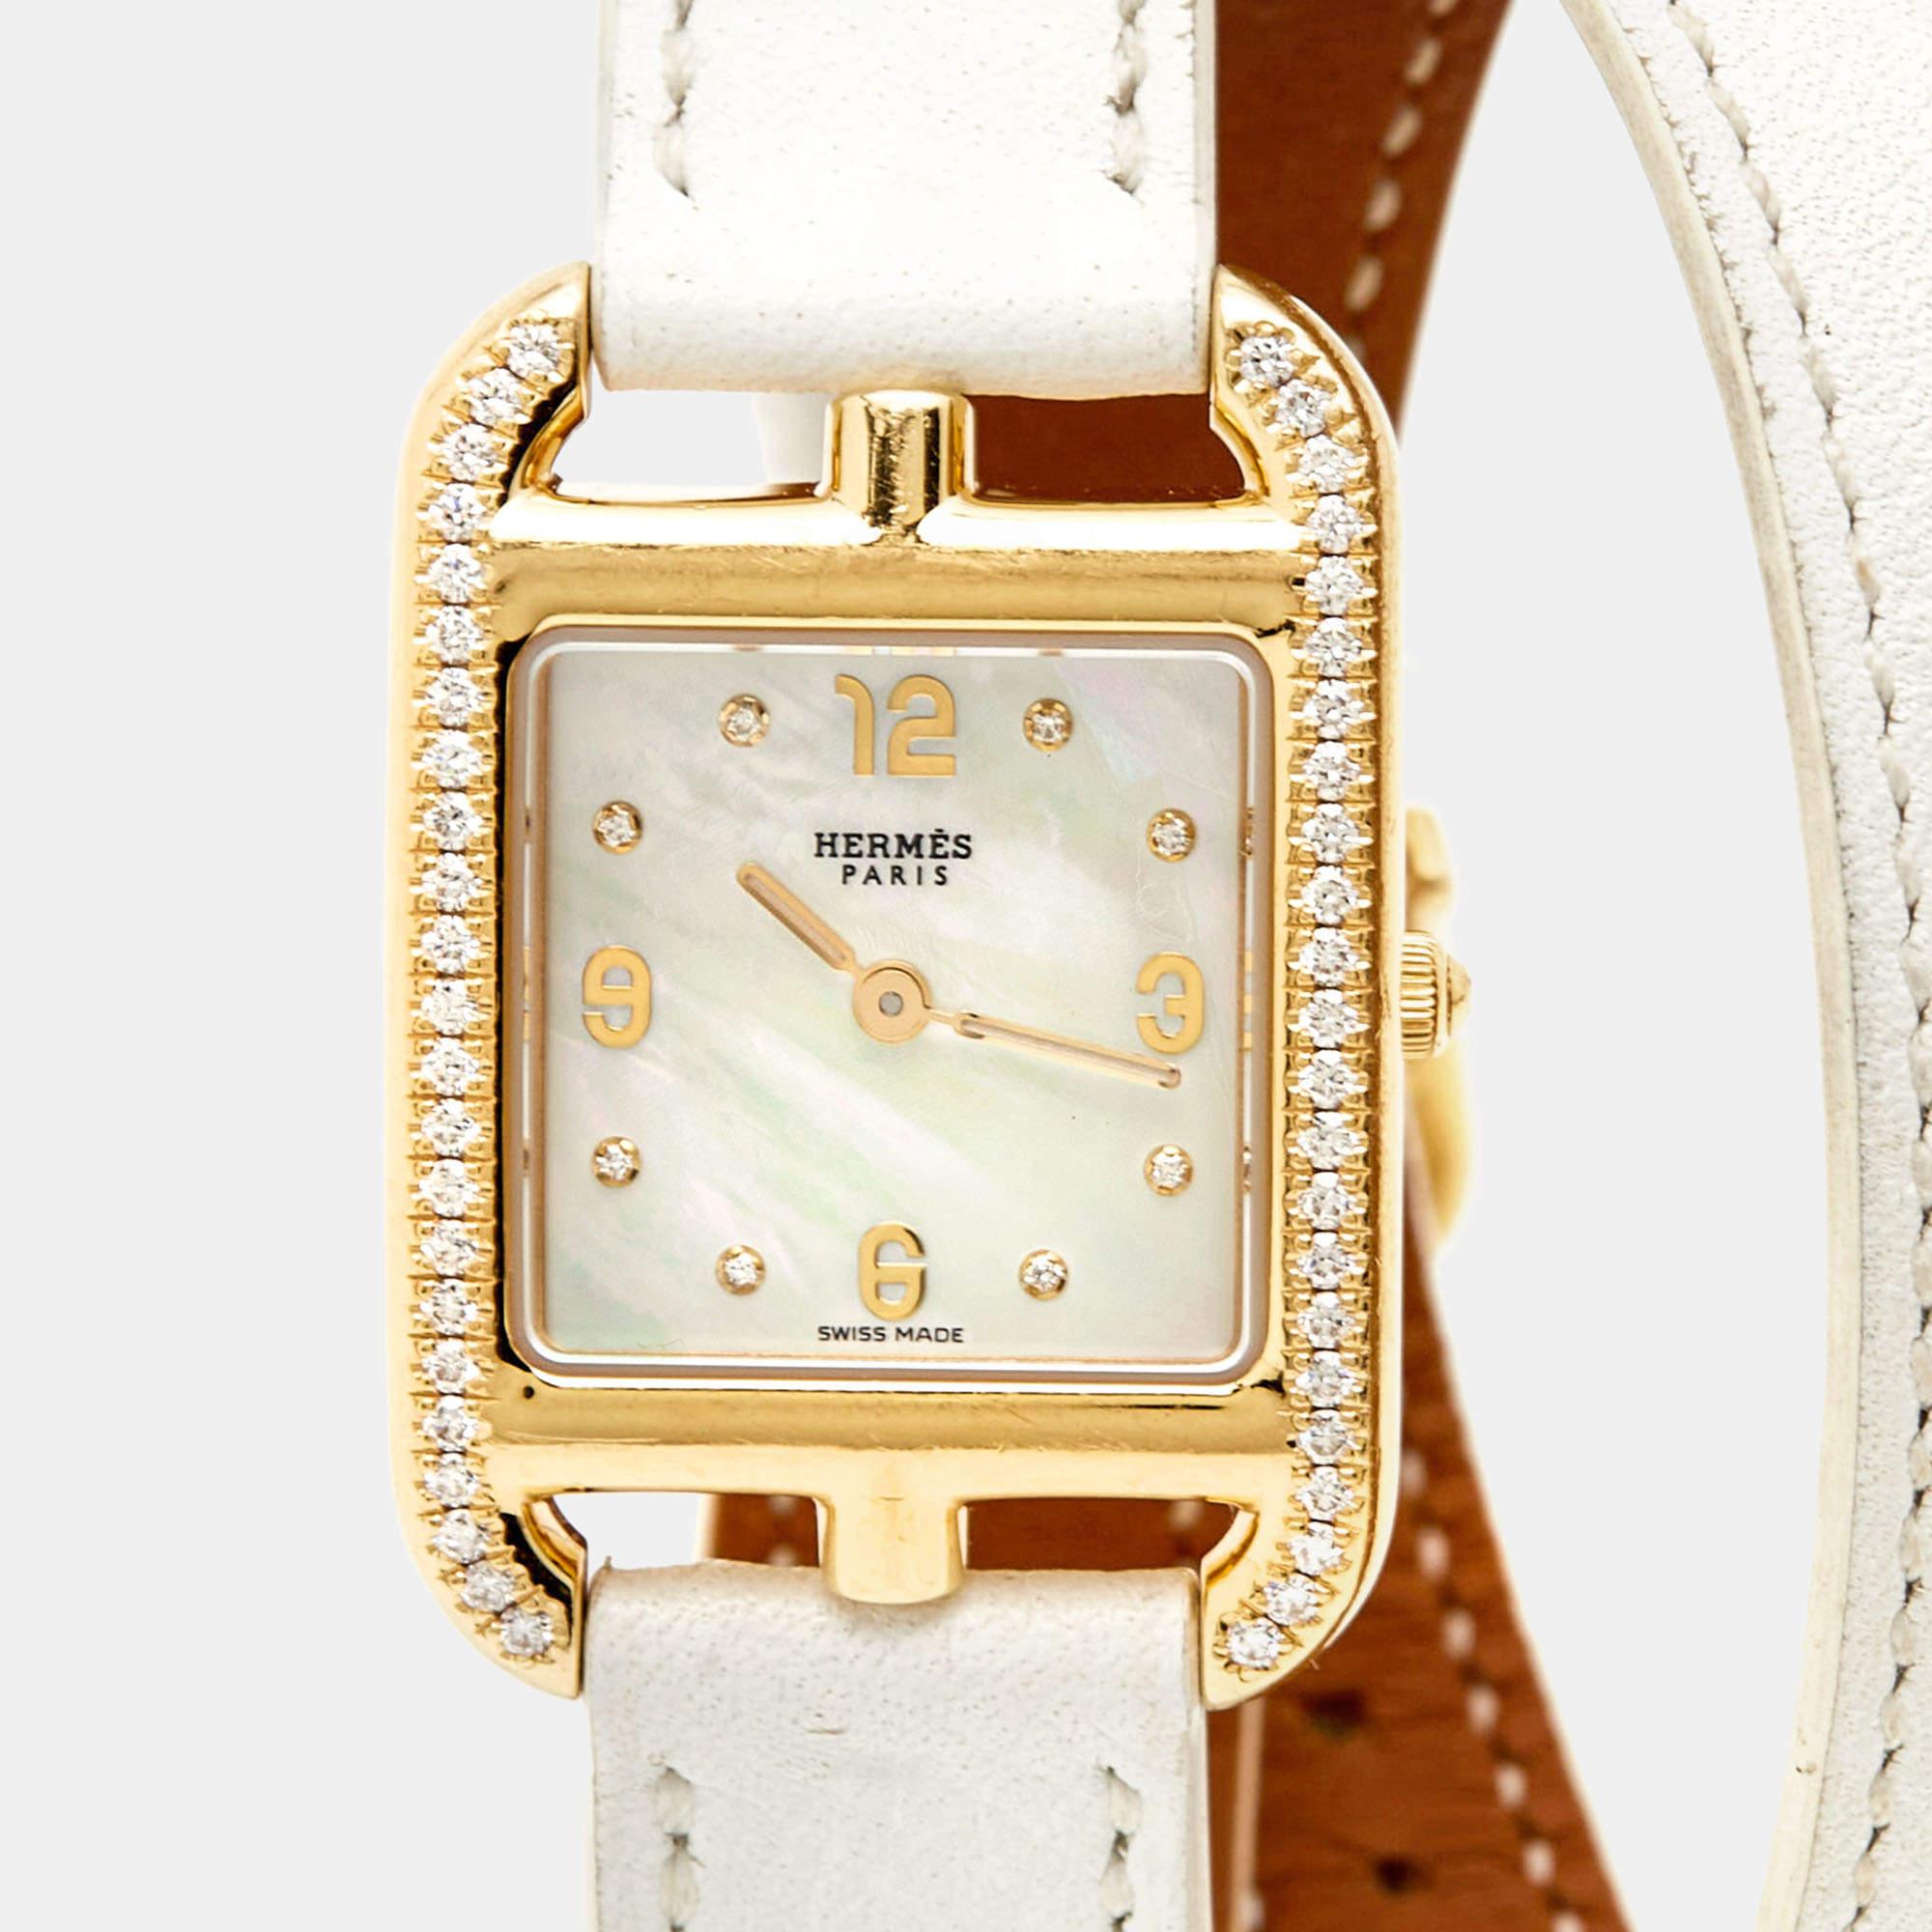 Cette montre-bracelet pour femme de la marque Hermes ajoutera une touche de luxe à votre style de tous les jours. Réalisée en or jaune 18 carats, elle est dotée d'un cadran en nacre et d'une parfaite addition de diamants qui rehaussent sa beauté. La